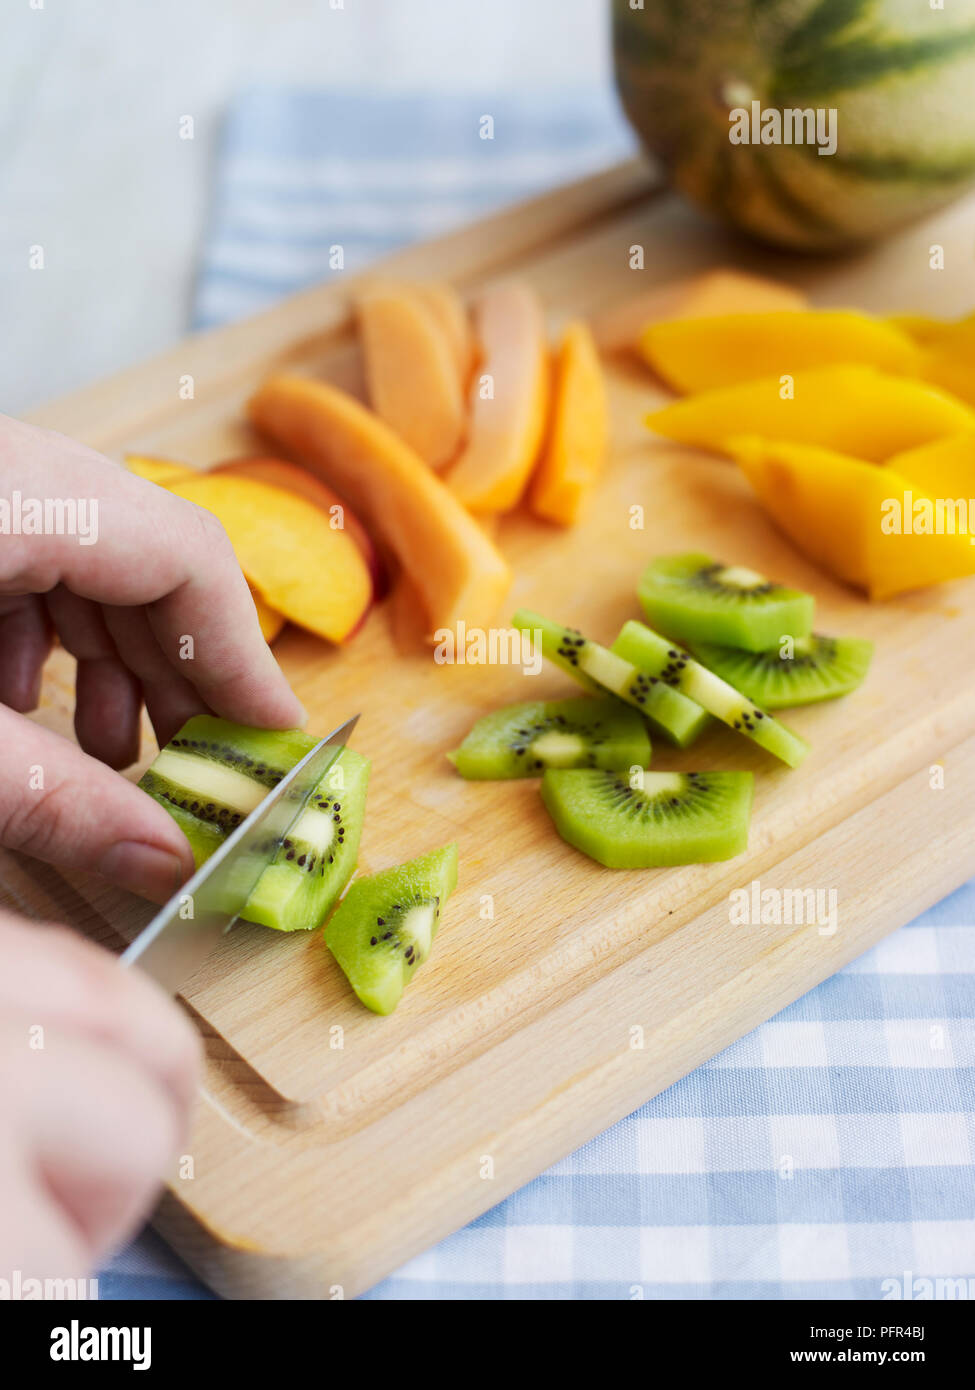 Chopping mangoes and kiwis Stock Photo